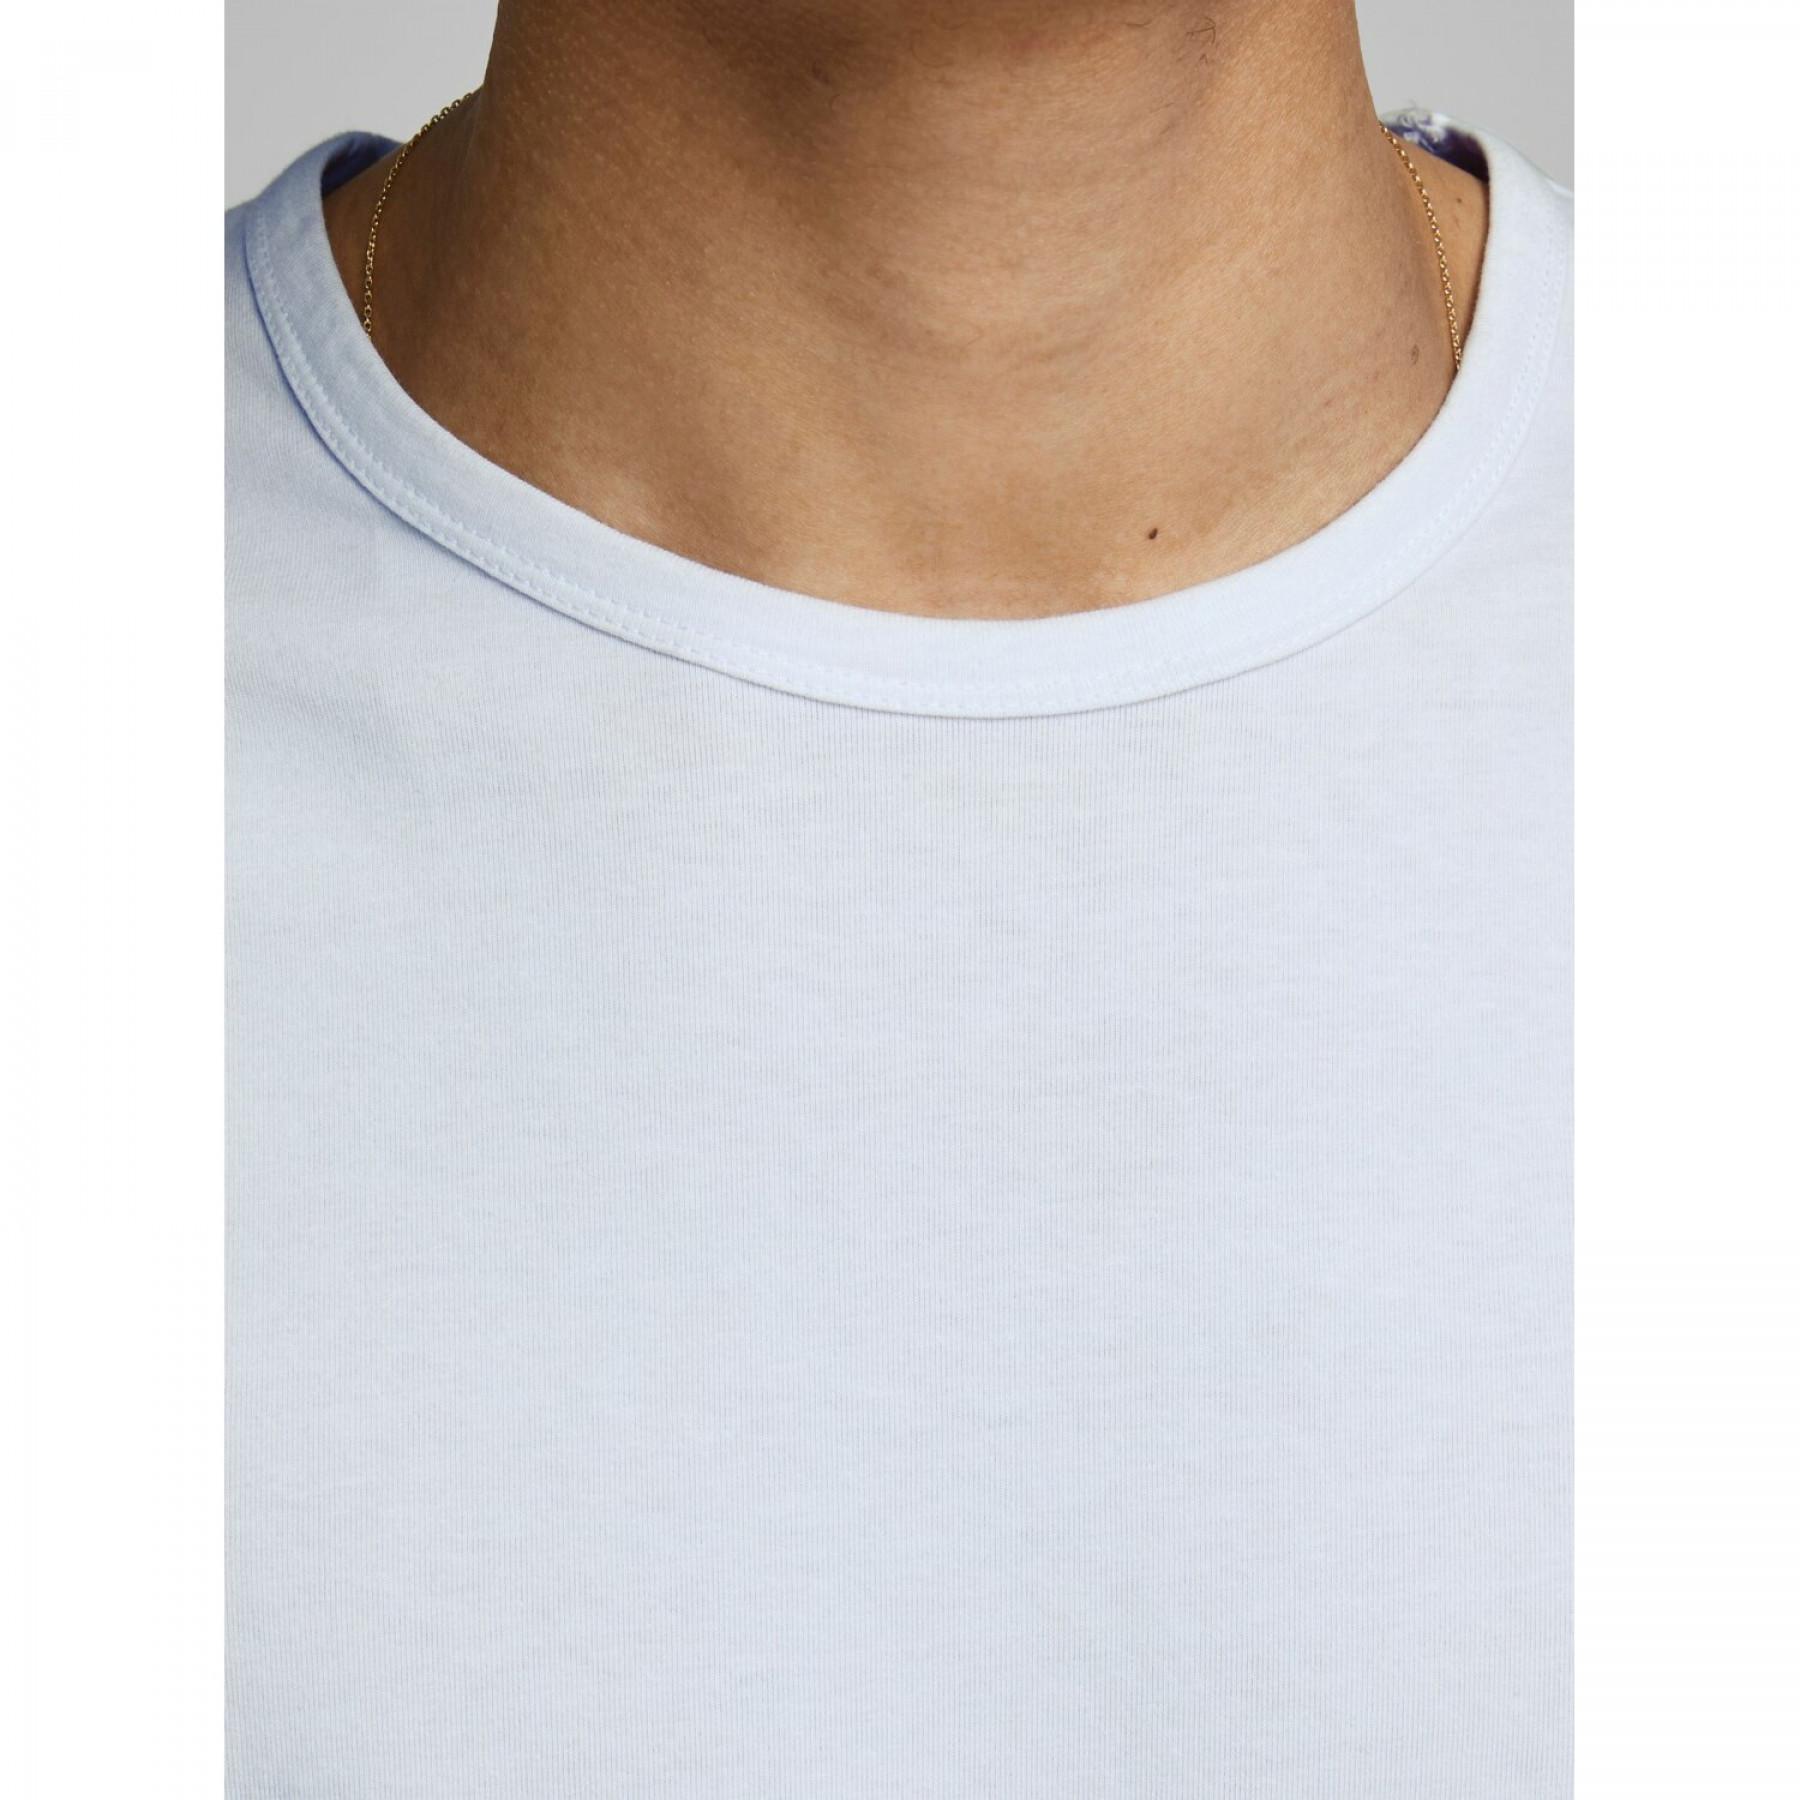 Camiseta Jack & Jones Basic o-neck